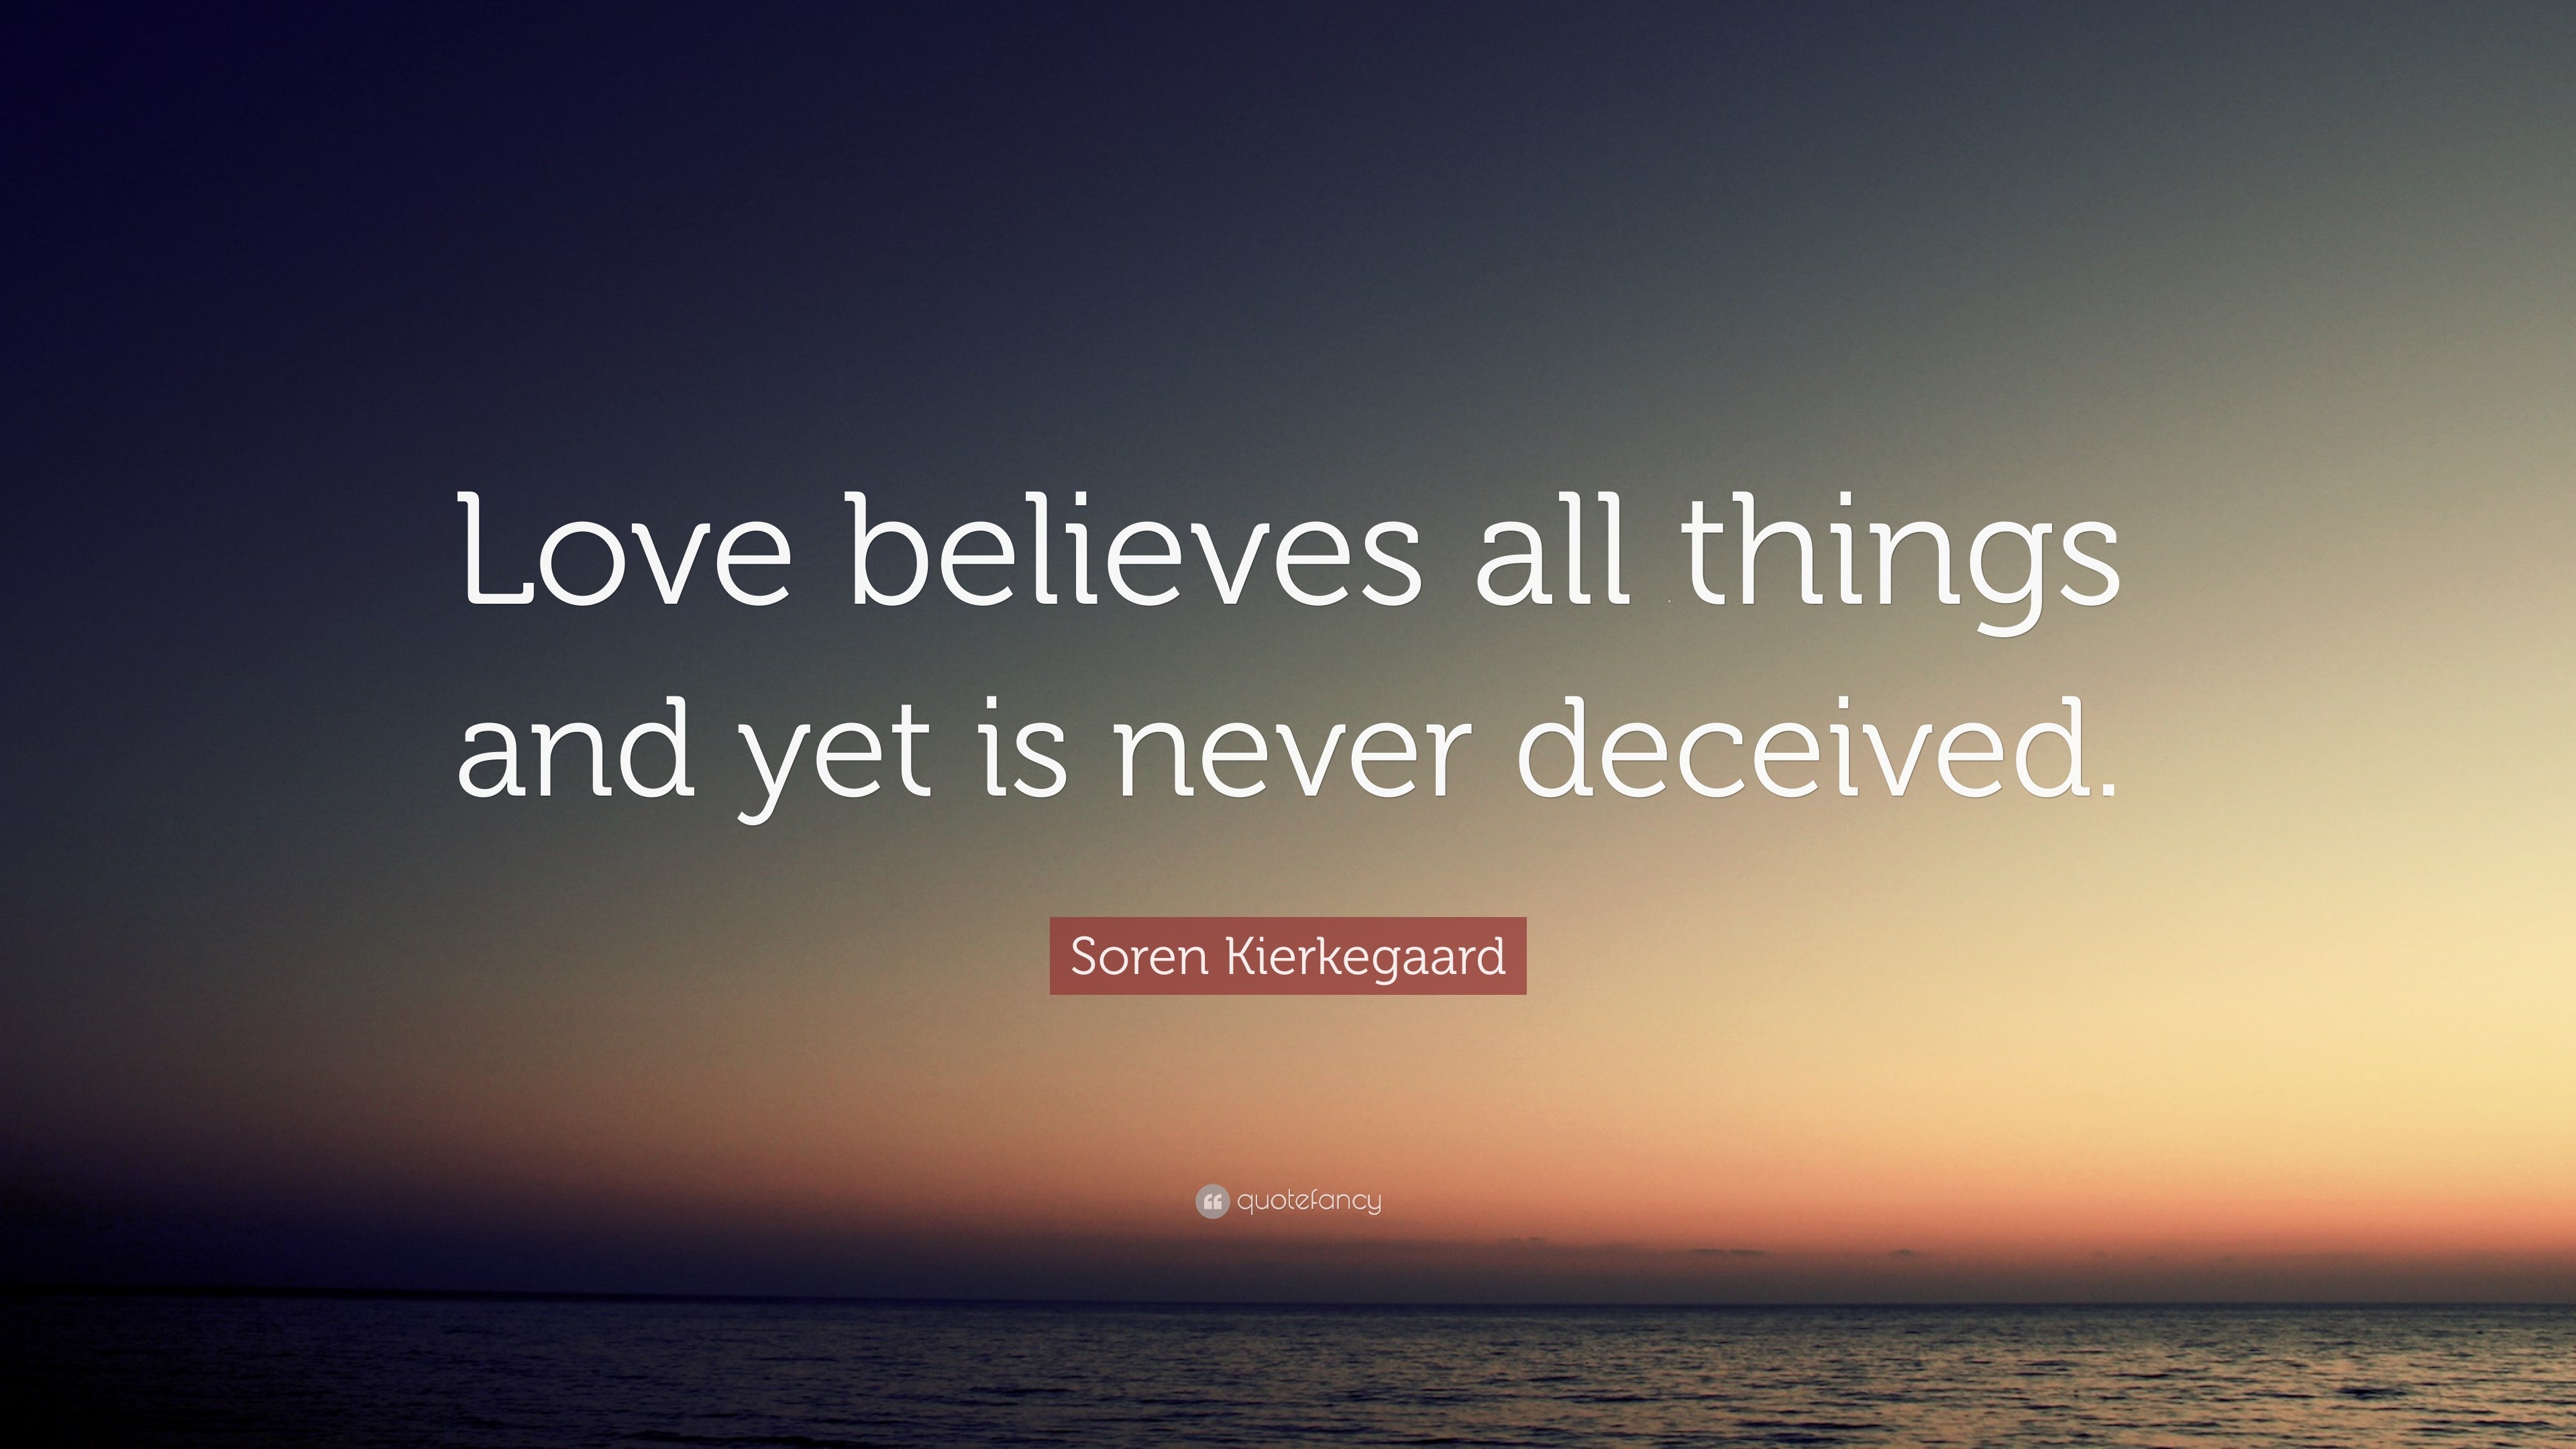 Soren Kierkegaard Quote: “Love believes all things and yet is never ...